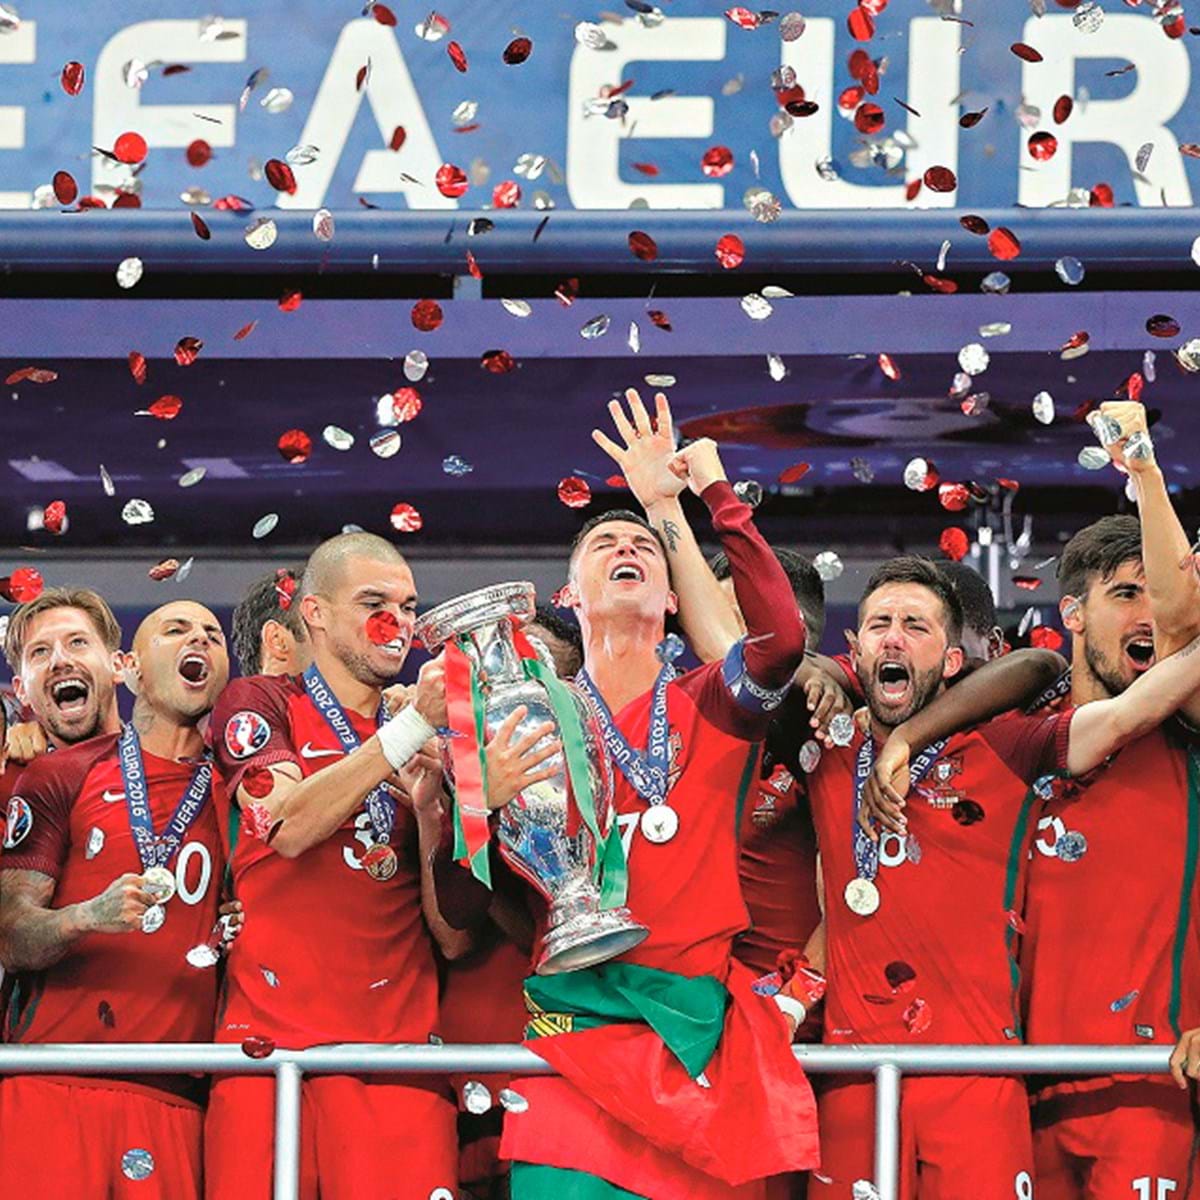 Portugal recebe Inglaterra, para preparar o Campeonato da Europa